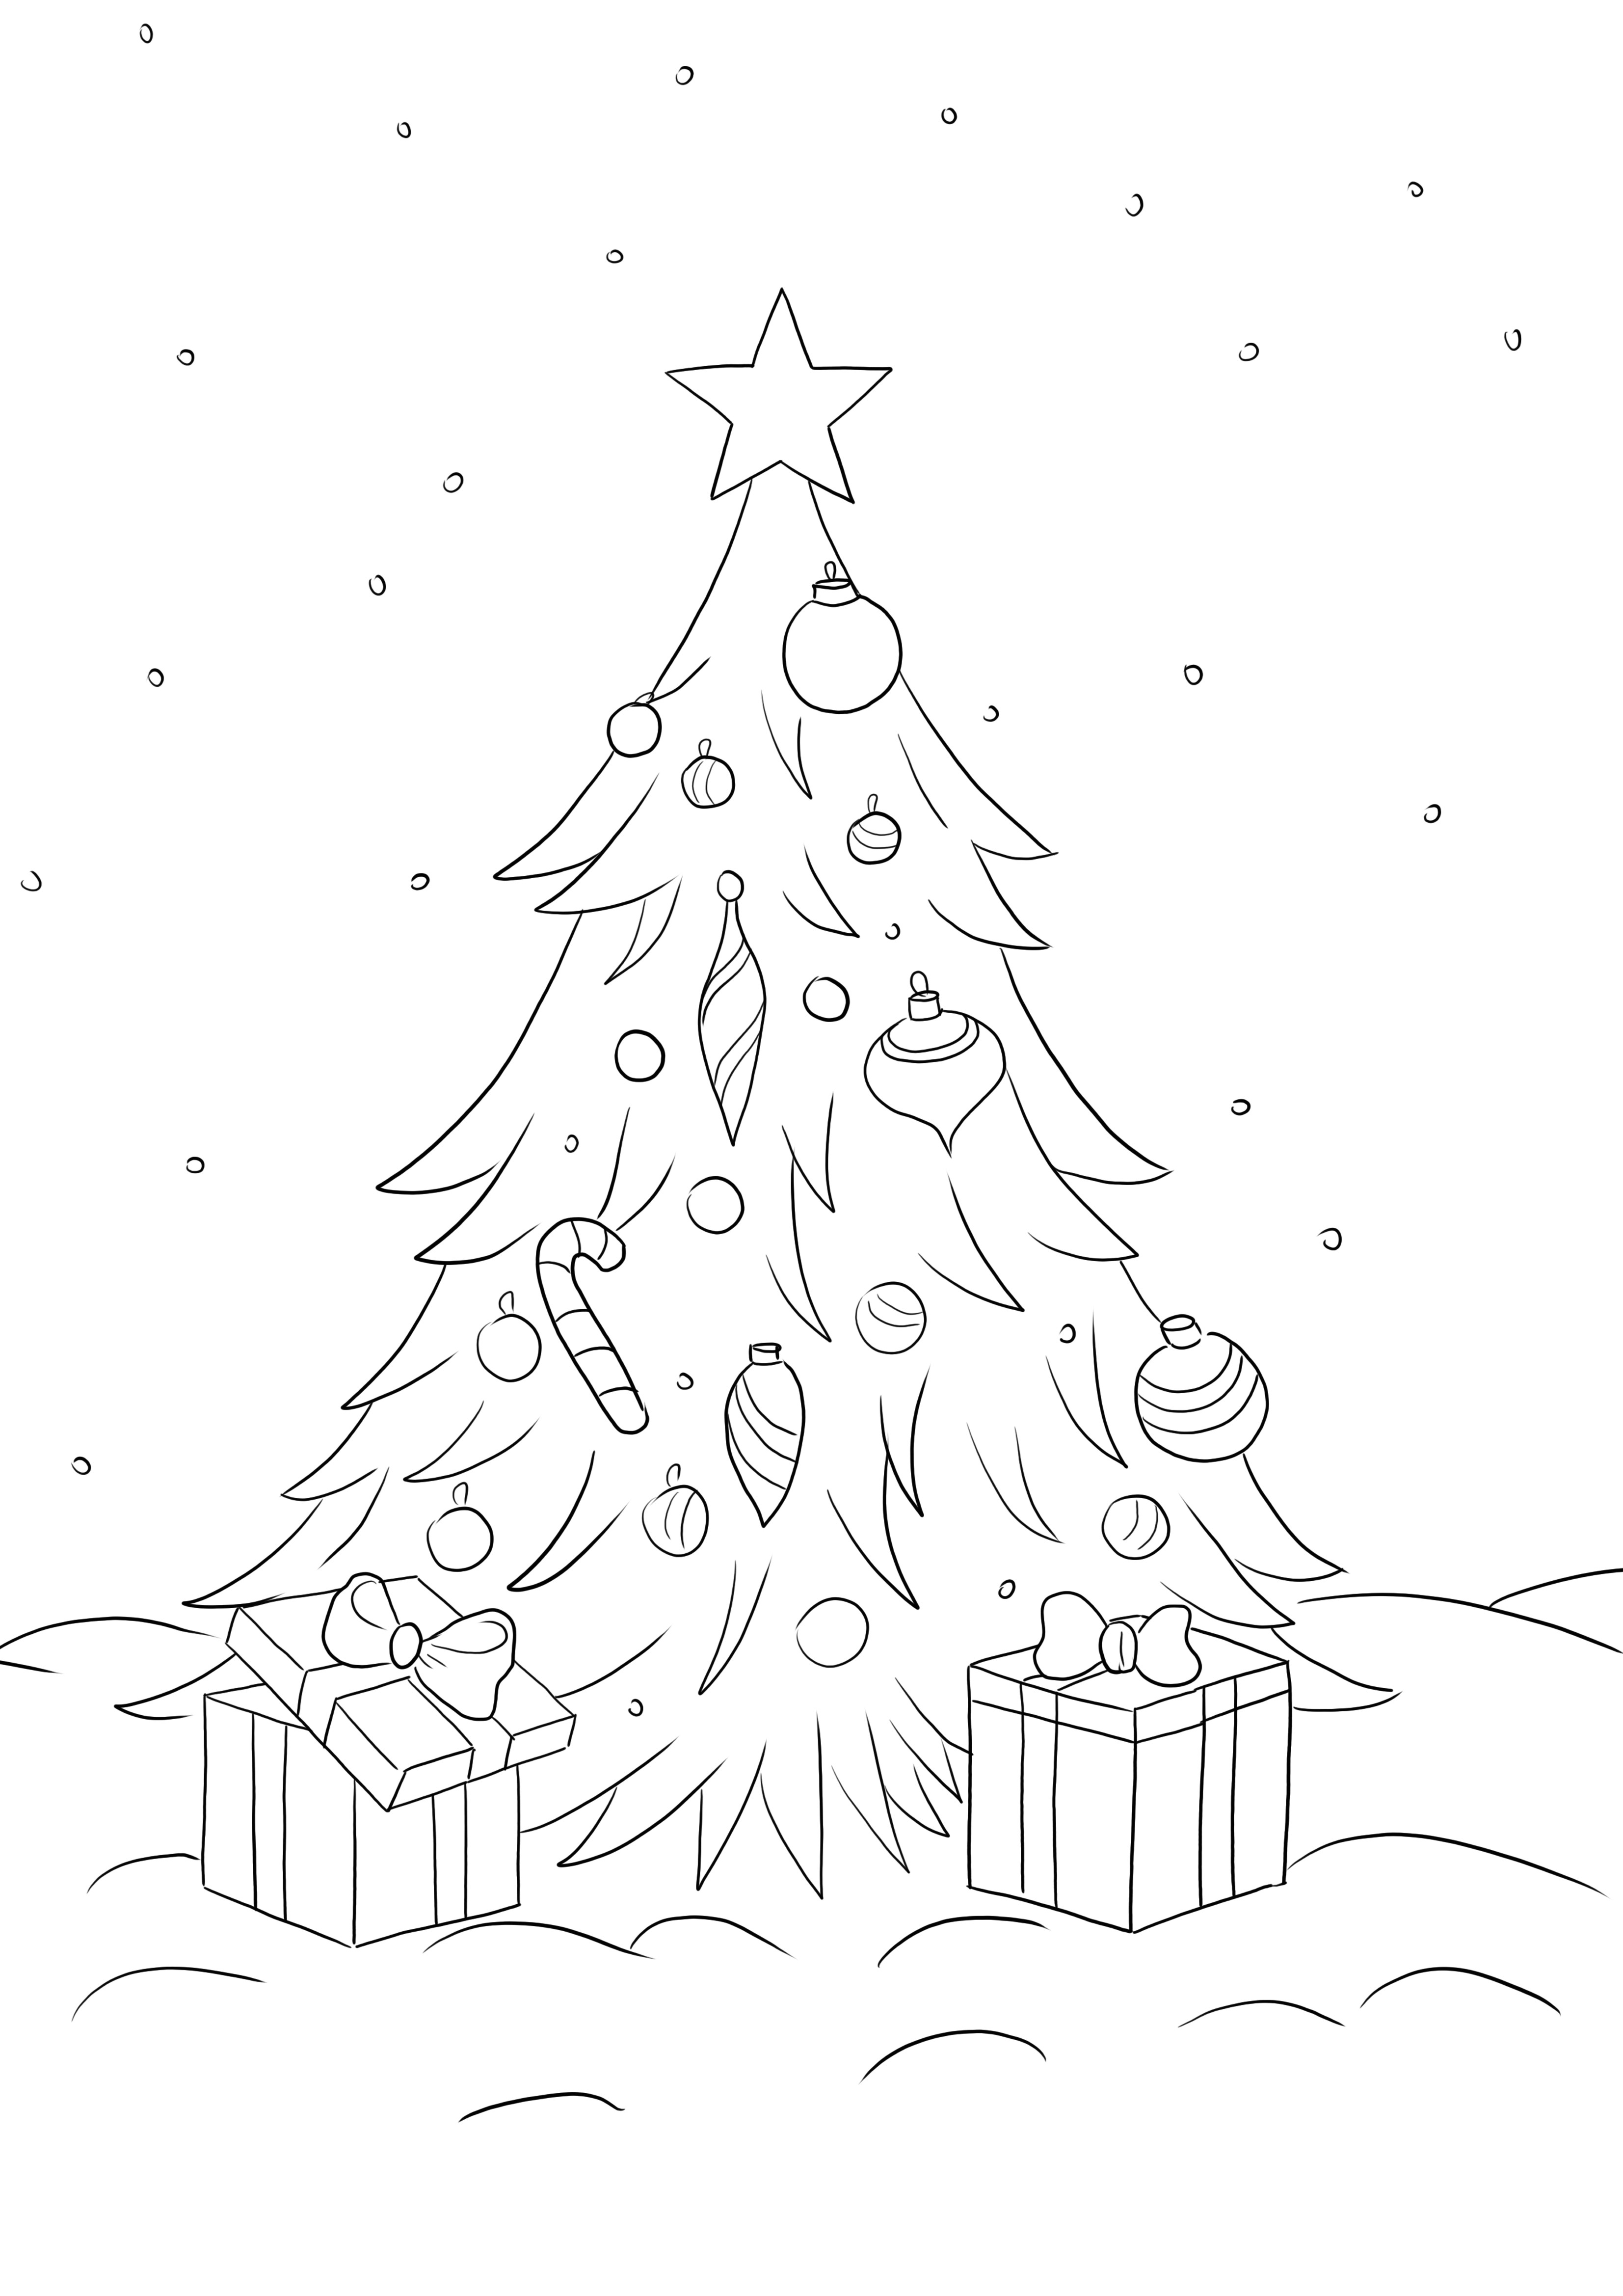 L'arbre de Noël avec des cadeaux est gratuit à télécharger et à colorier